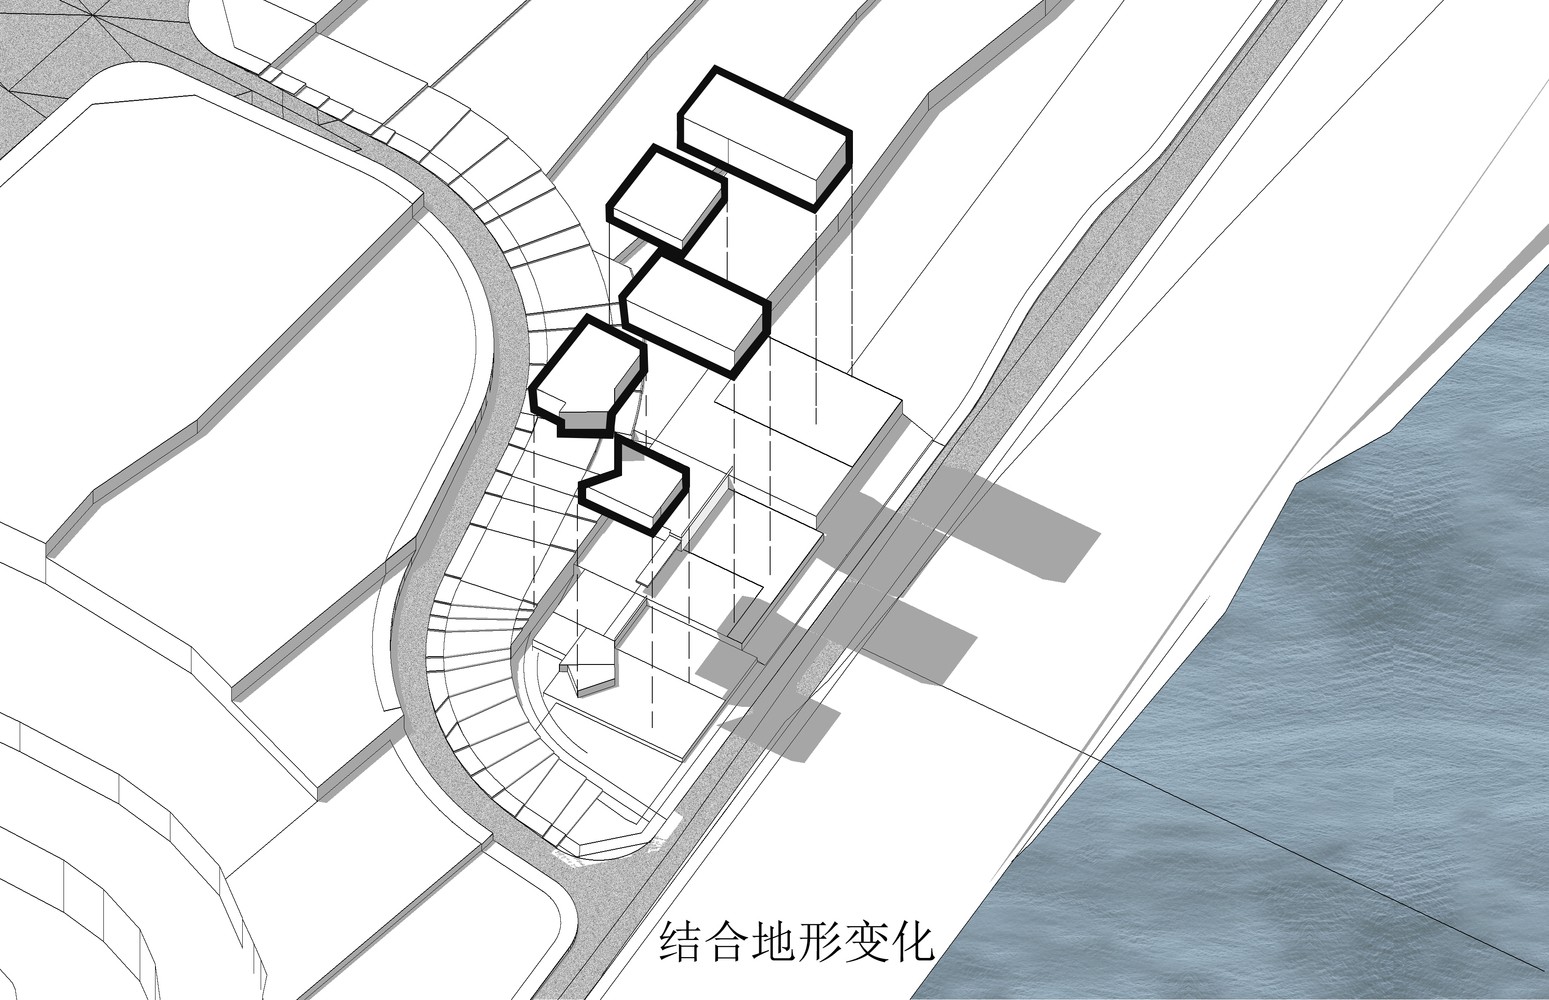 重庆龙湖两江长滩原麓社区中心建筑设计/成执建筑